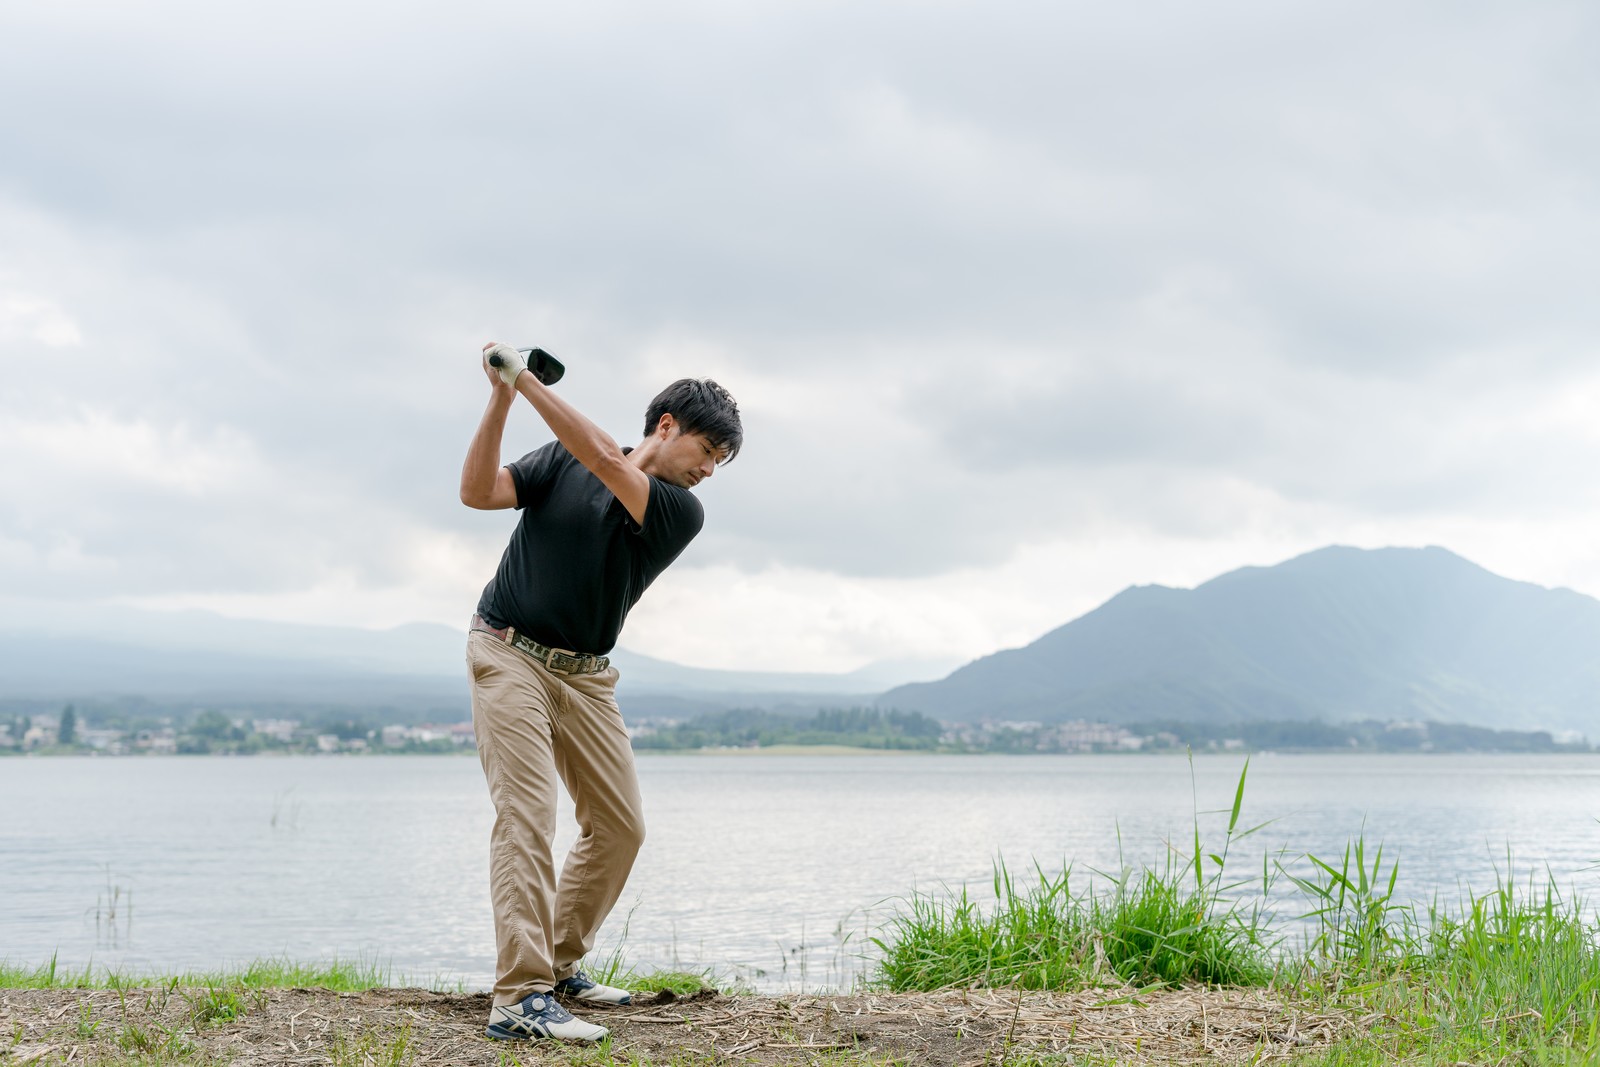 大阪には名門ゴルフ場がたくさん 大阪で人気の名門ゴルフ場を紹介 イエモア